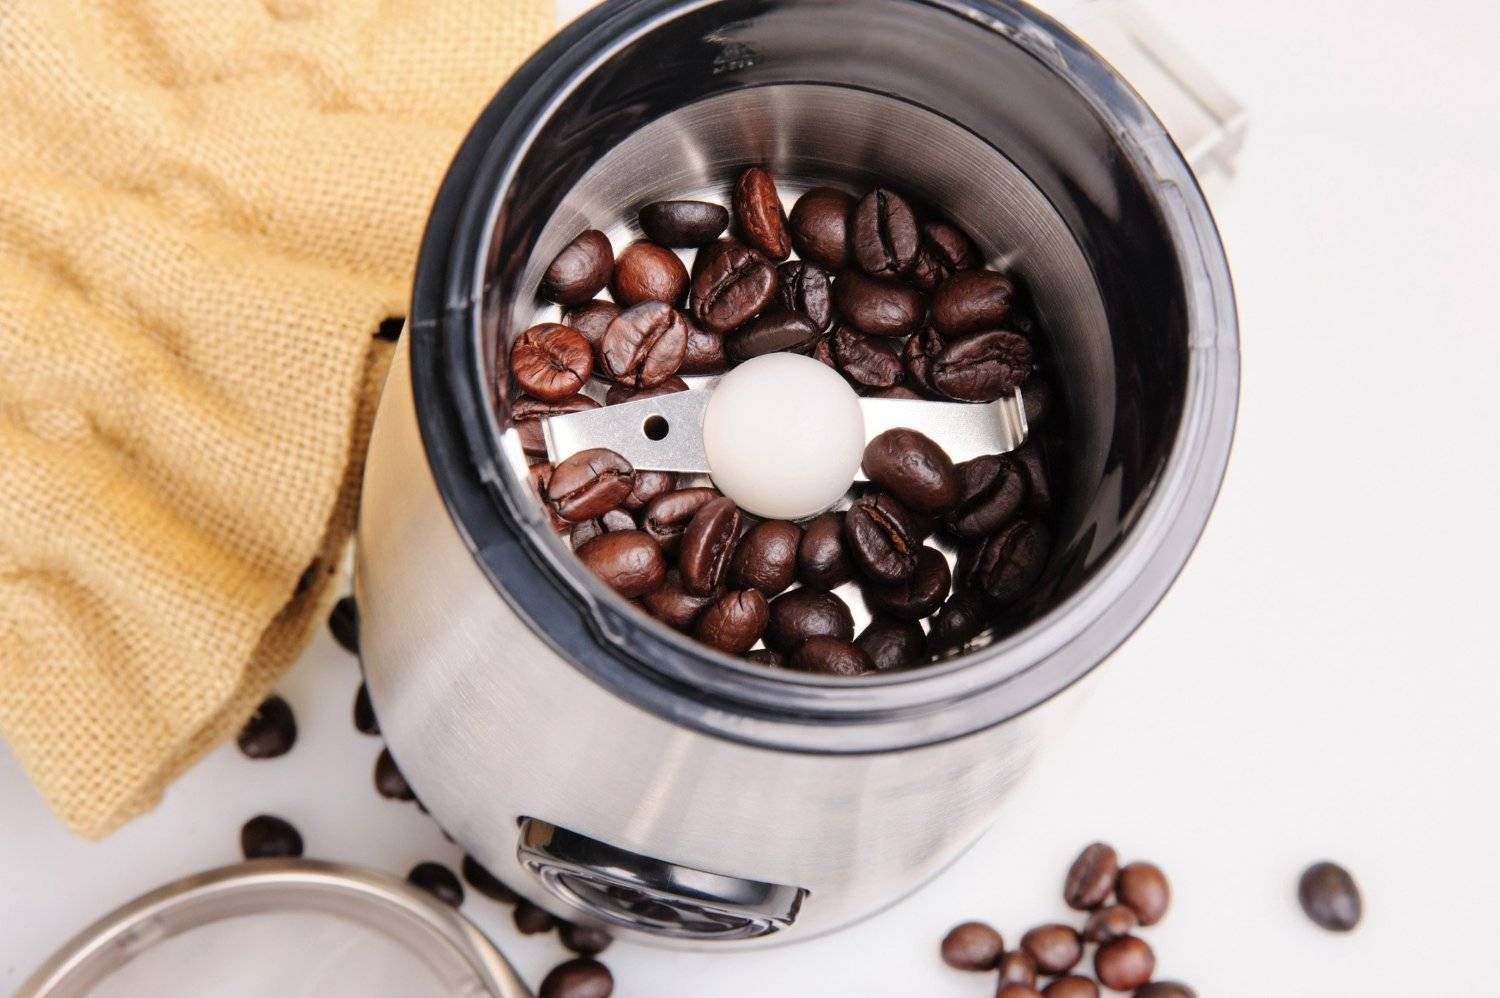 Какая кофемолка лучше ручная или электрическая, описание обоих видов, сравнение